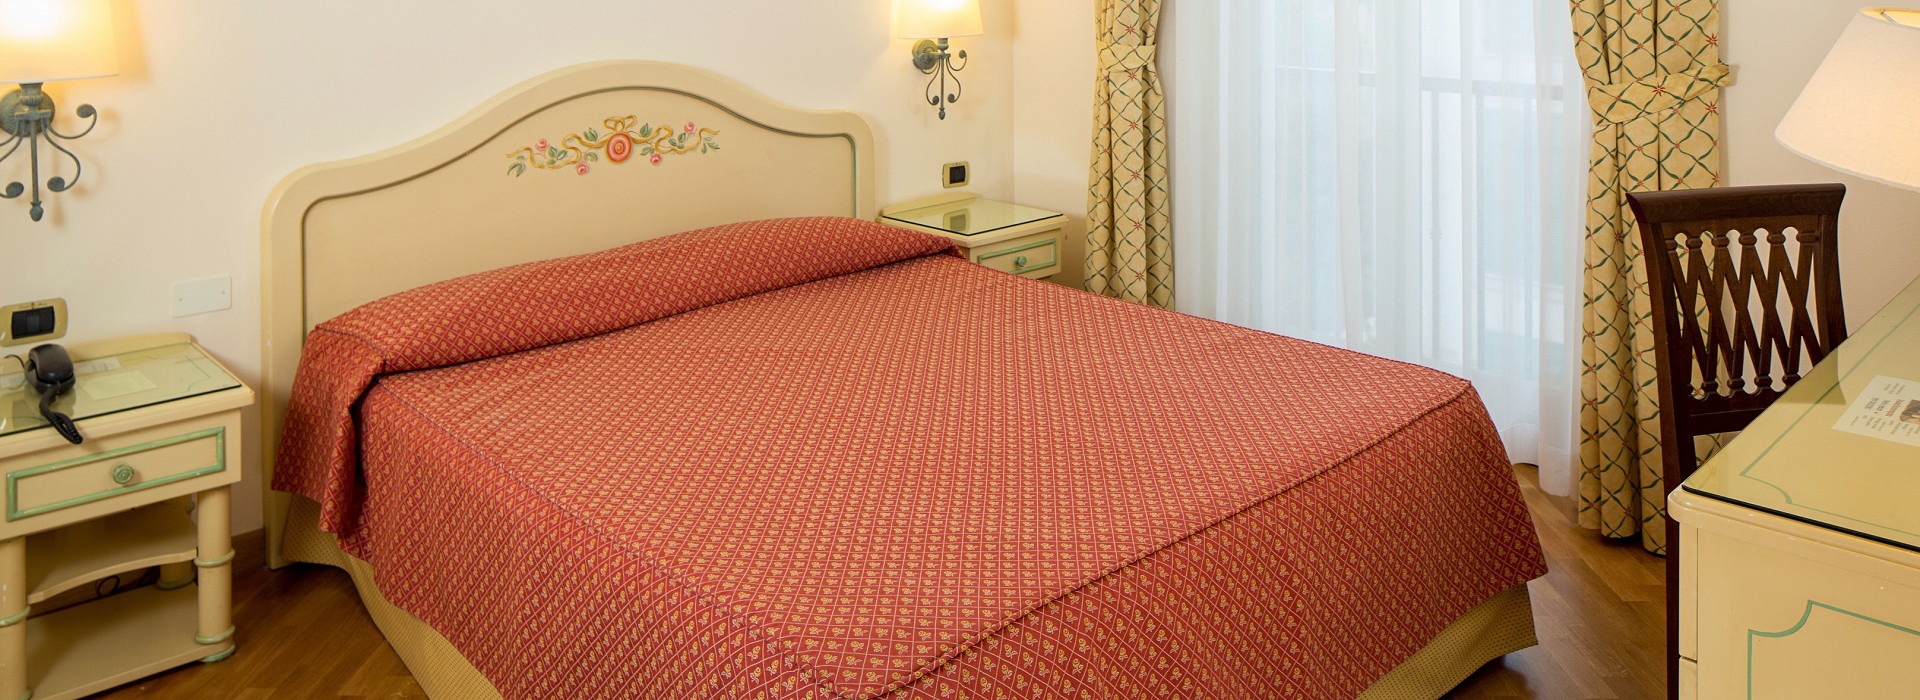 Hotel Italian Riviera | 4 Star Hotel Sestri Levante